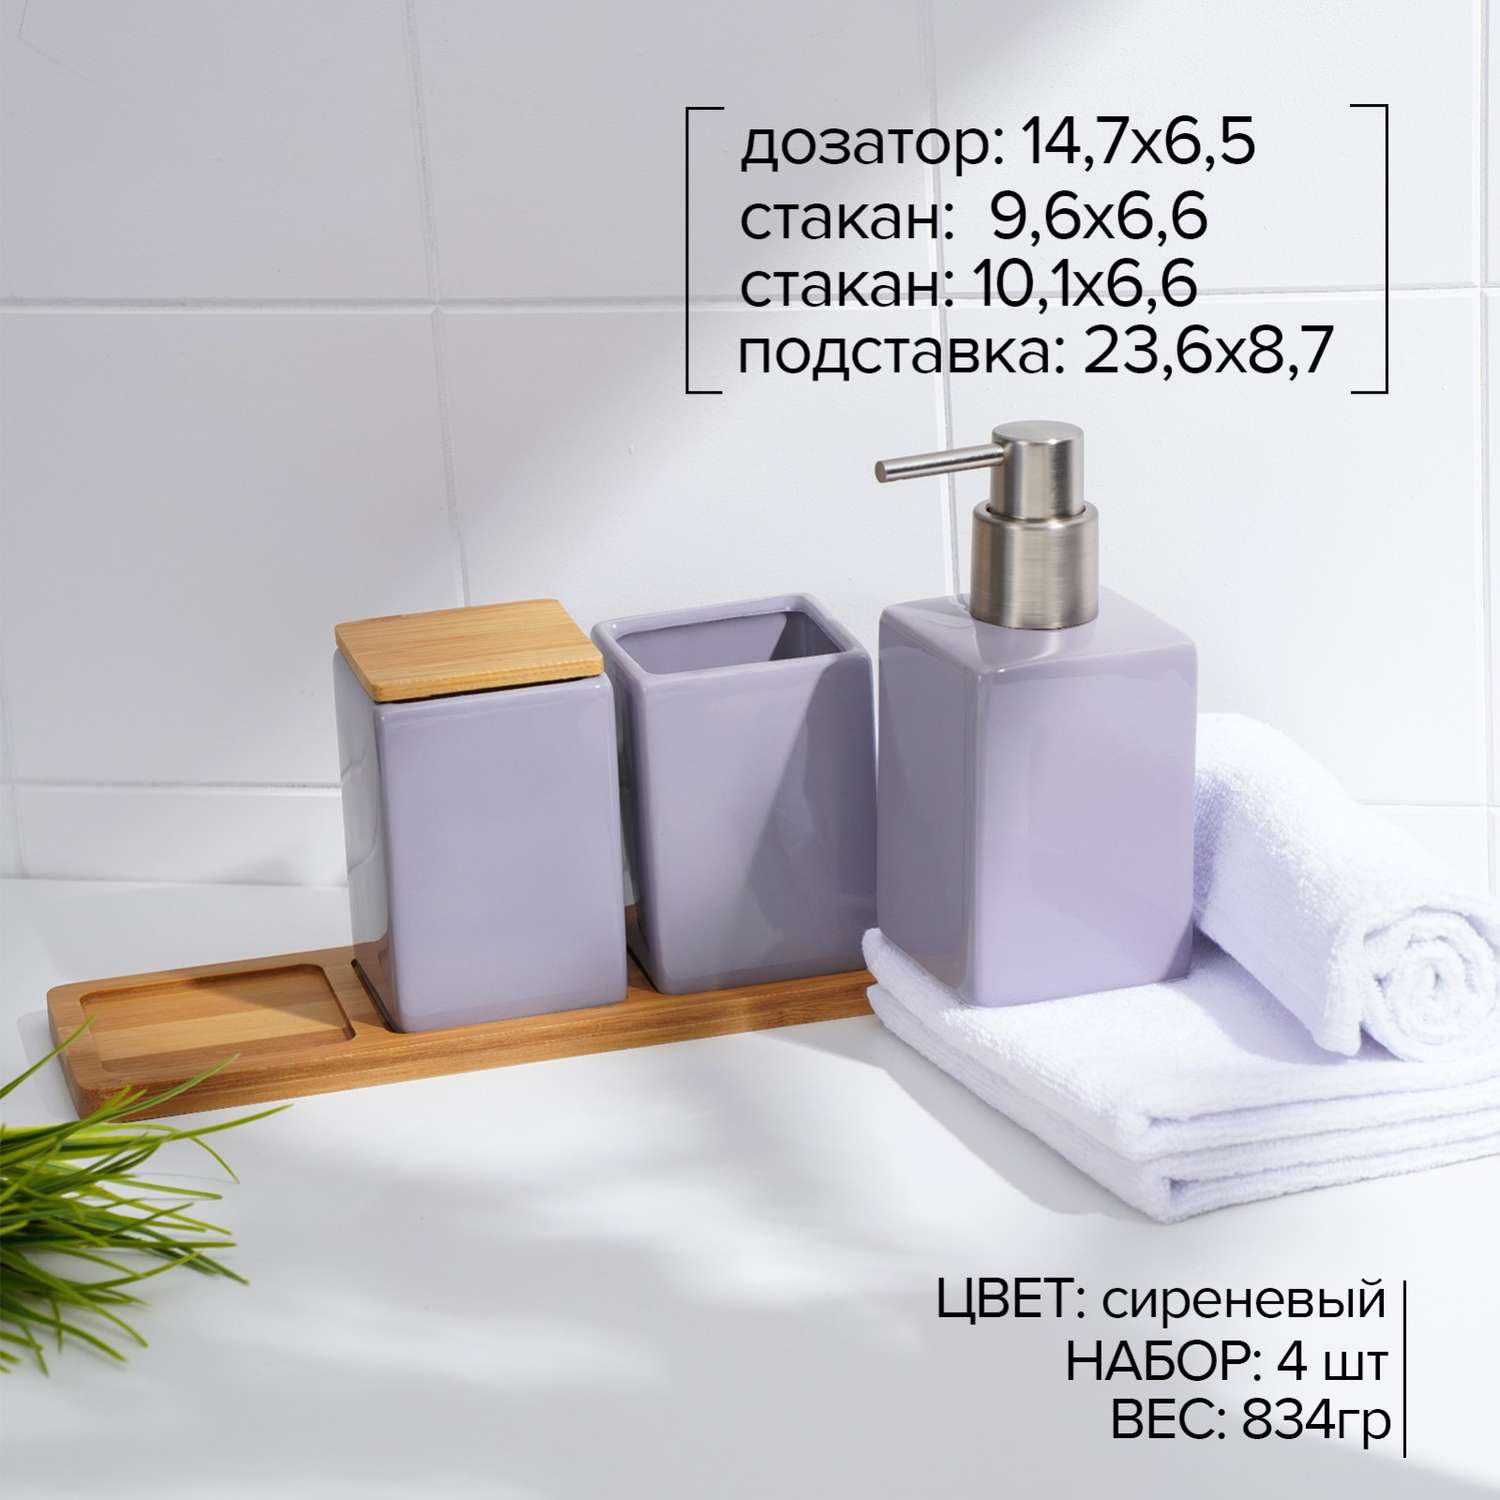 Набор SAVANNA аксессуаров для ванной комнаты - фото 2